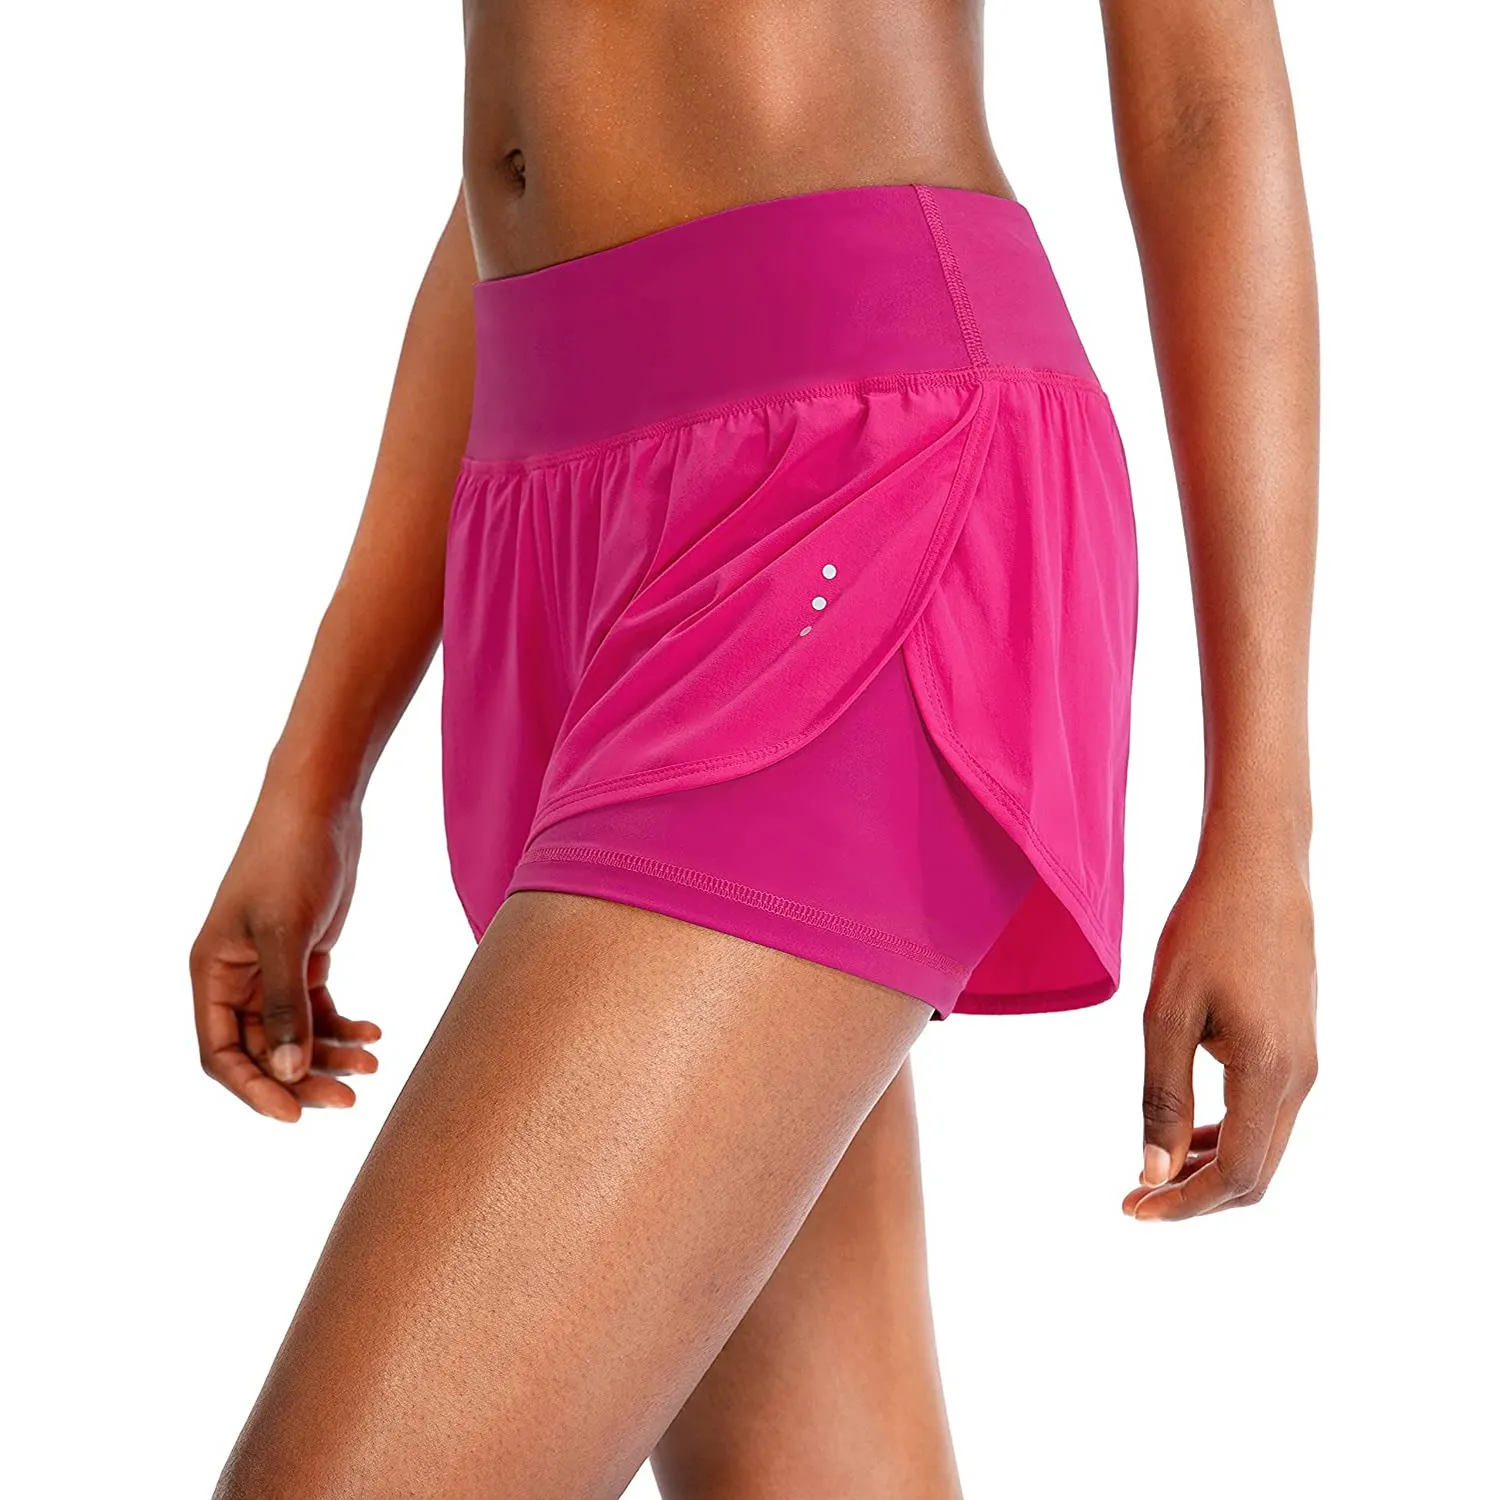 Benutzer definierte Großhandel Frauen Quick-Dry Loose Workout Radfahren Laufen Fitness Shorts Sommer Elastic Lady Hot Shorts mit Taschen